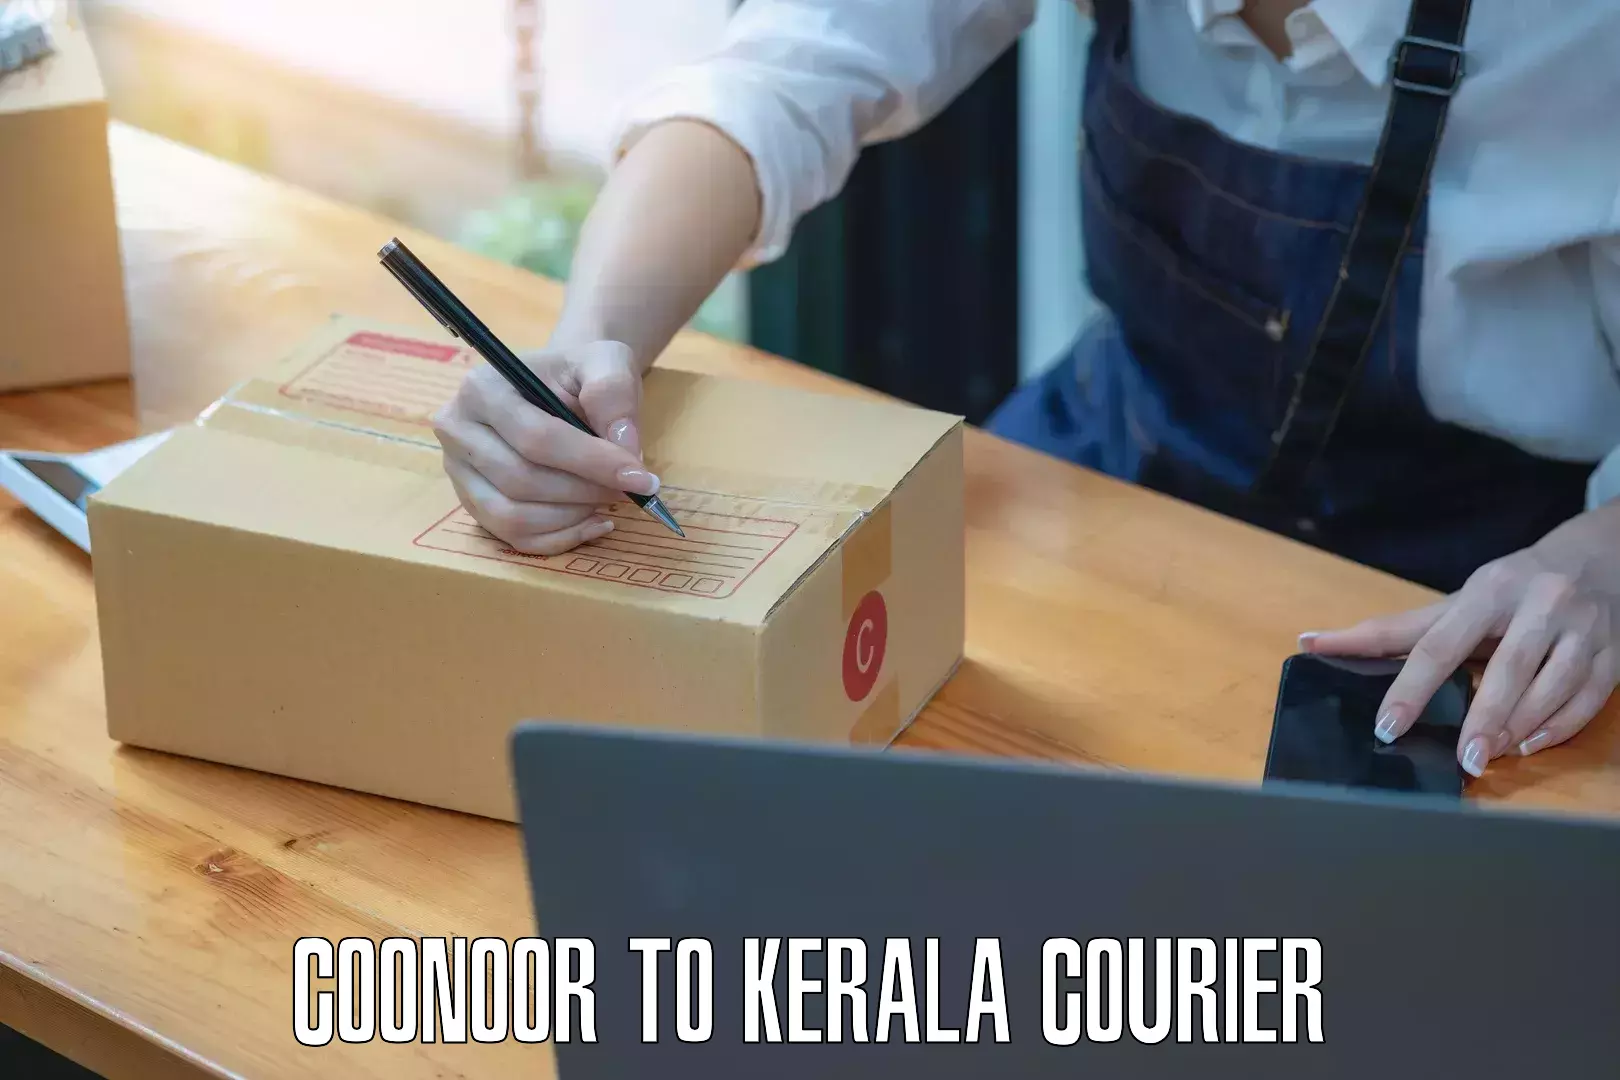 Smart parcel solutions in Coonoor to Kollam